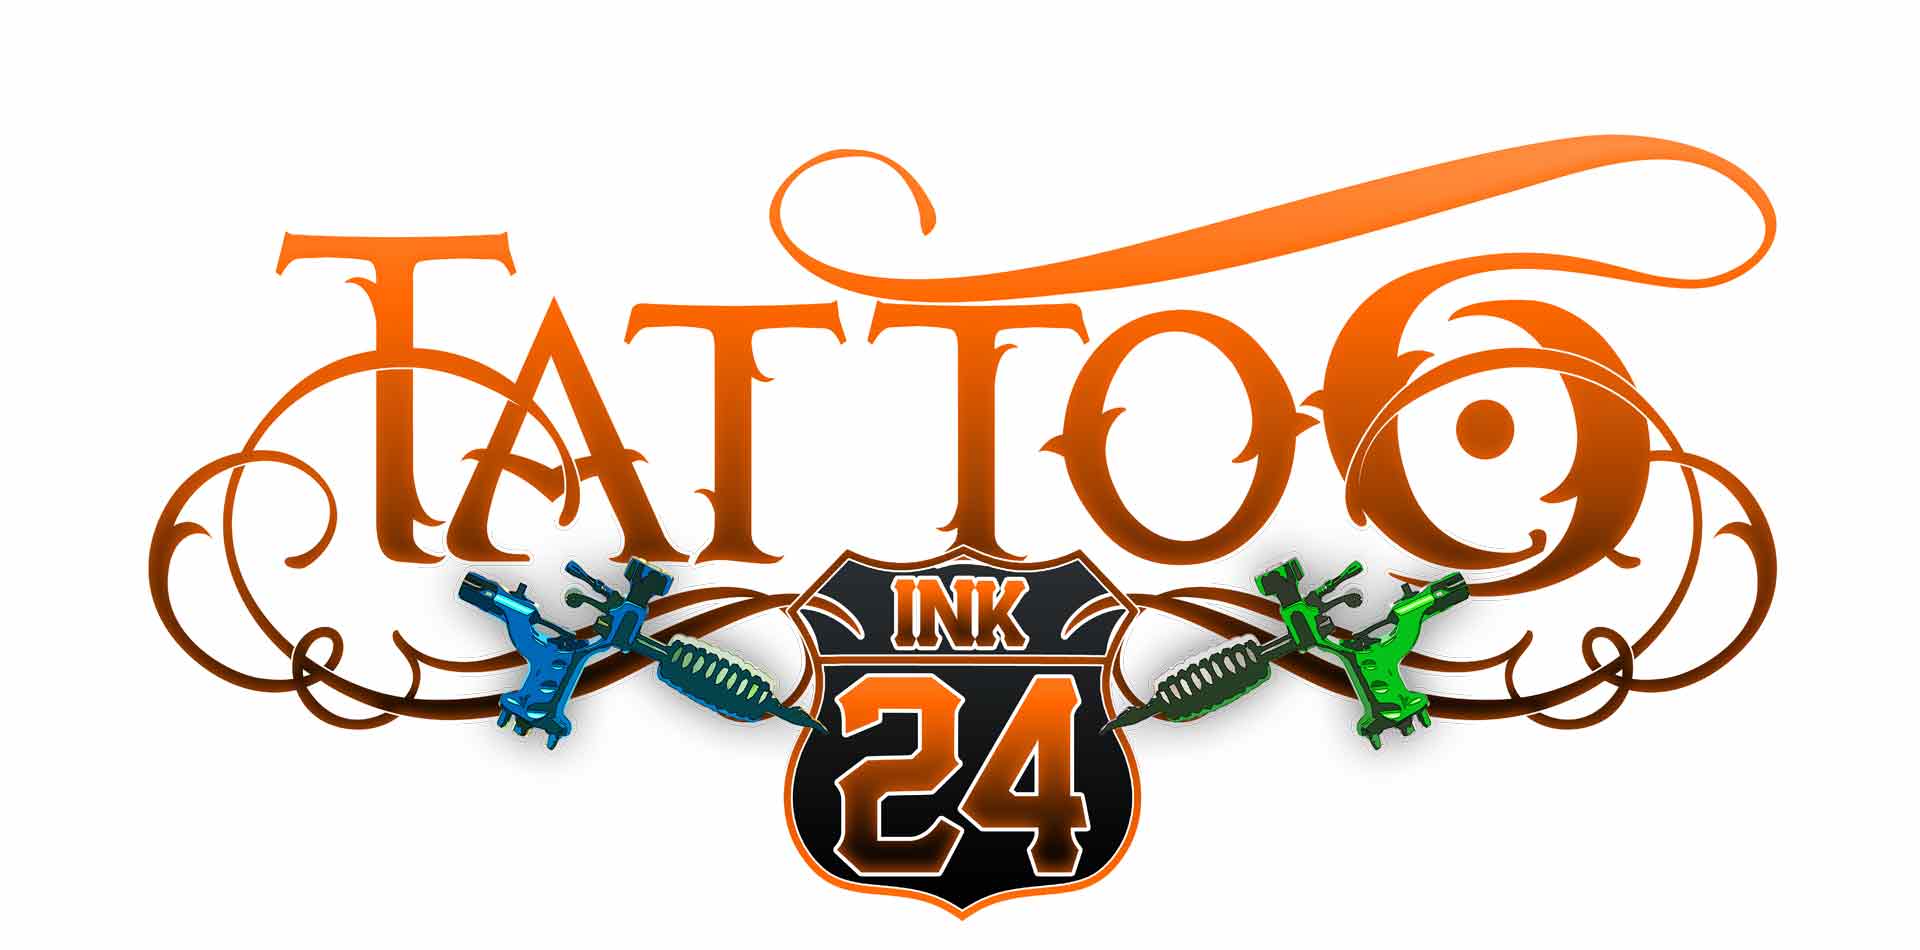 Logotipo Tattoo ink24